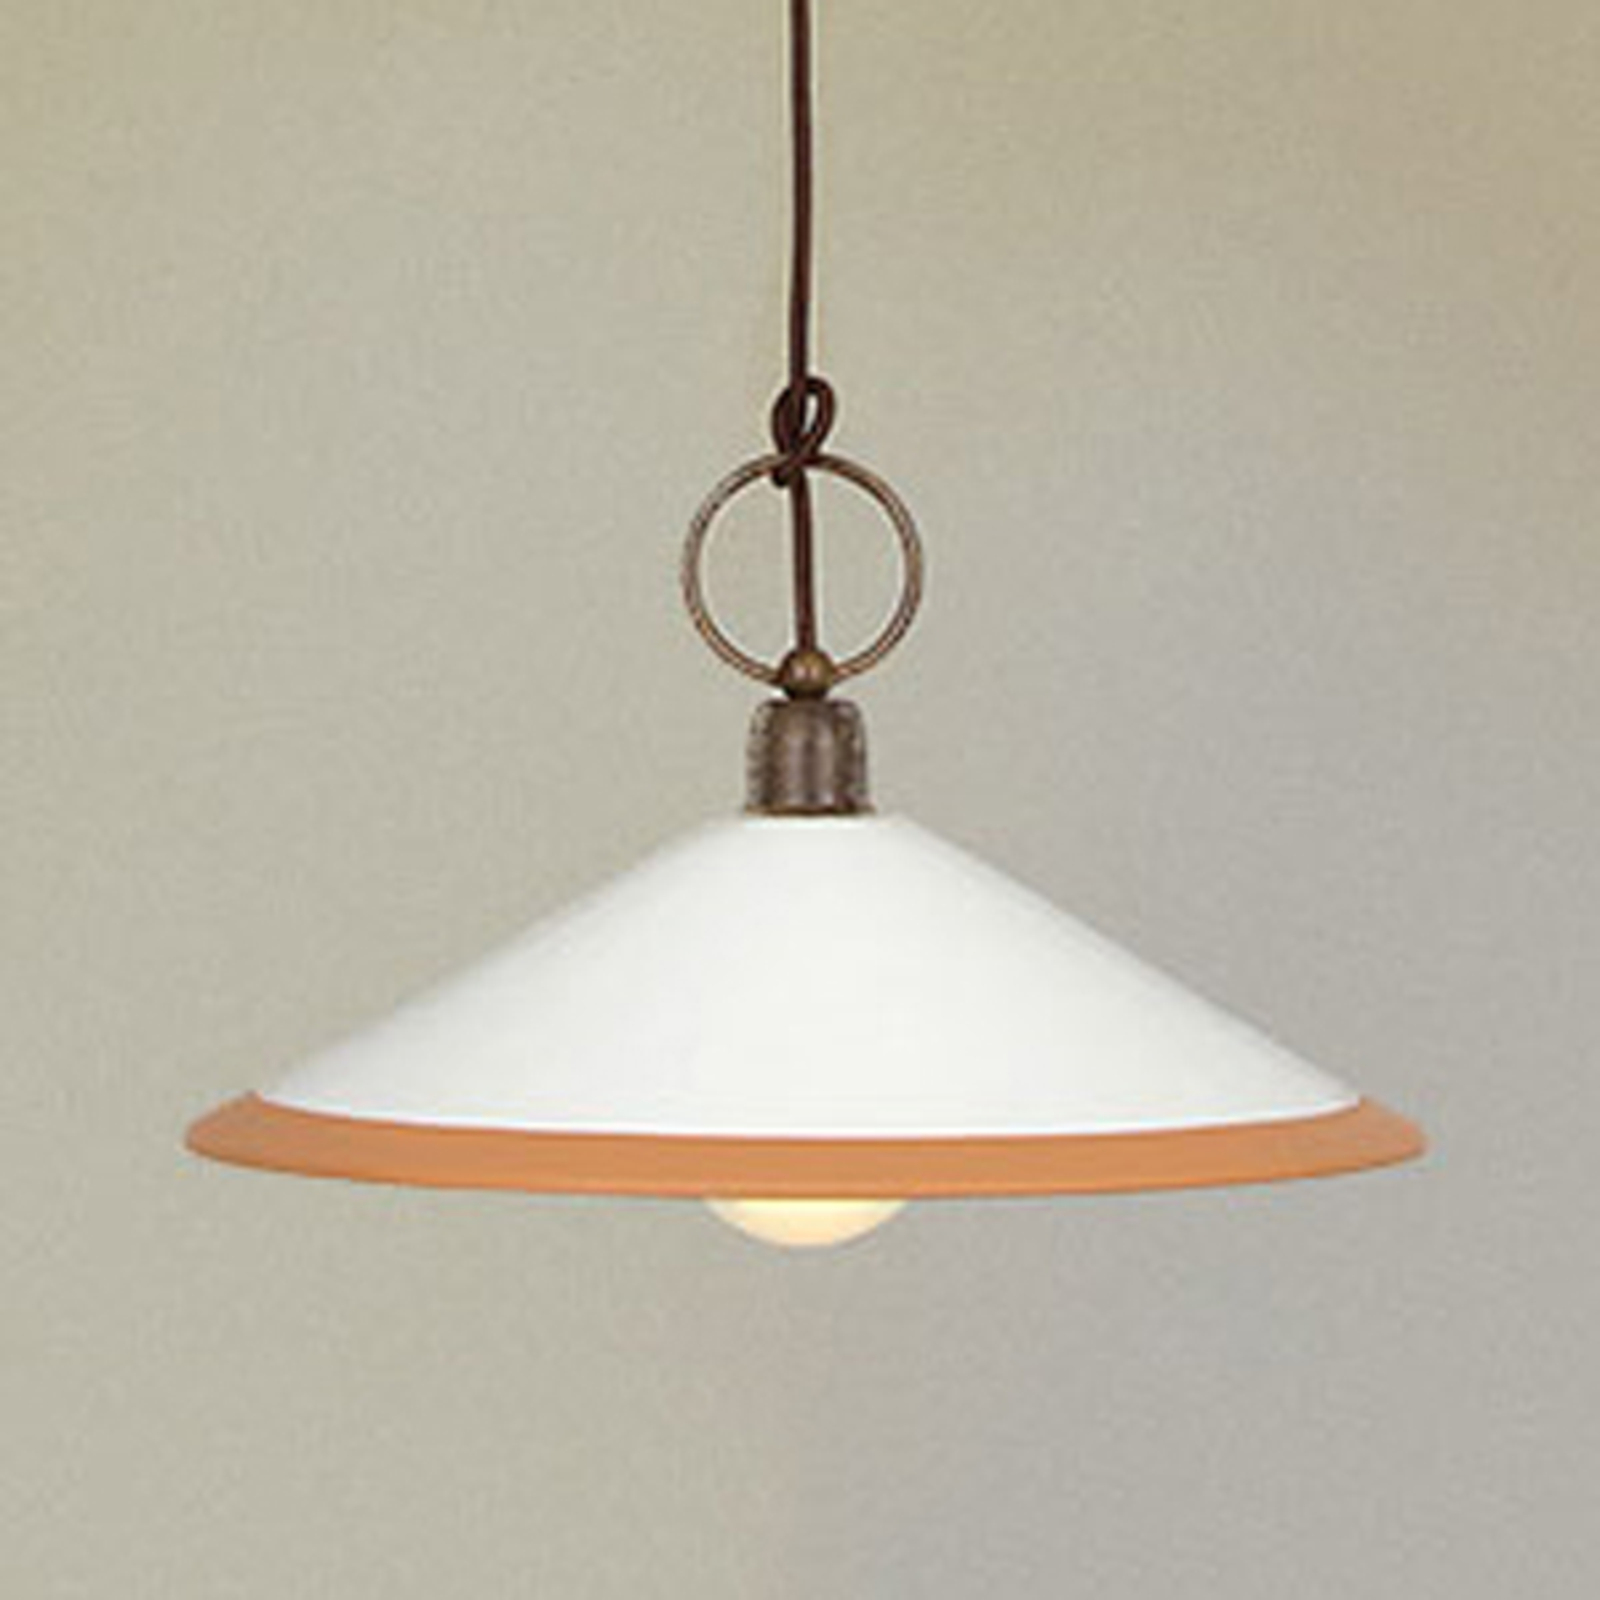 Függő lámpa 4560/S41, barna, fehér, okkersárga